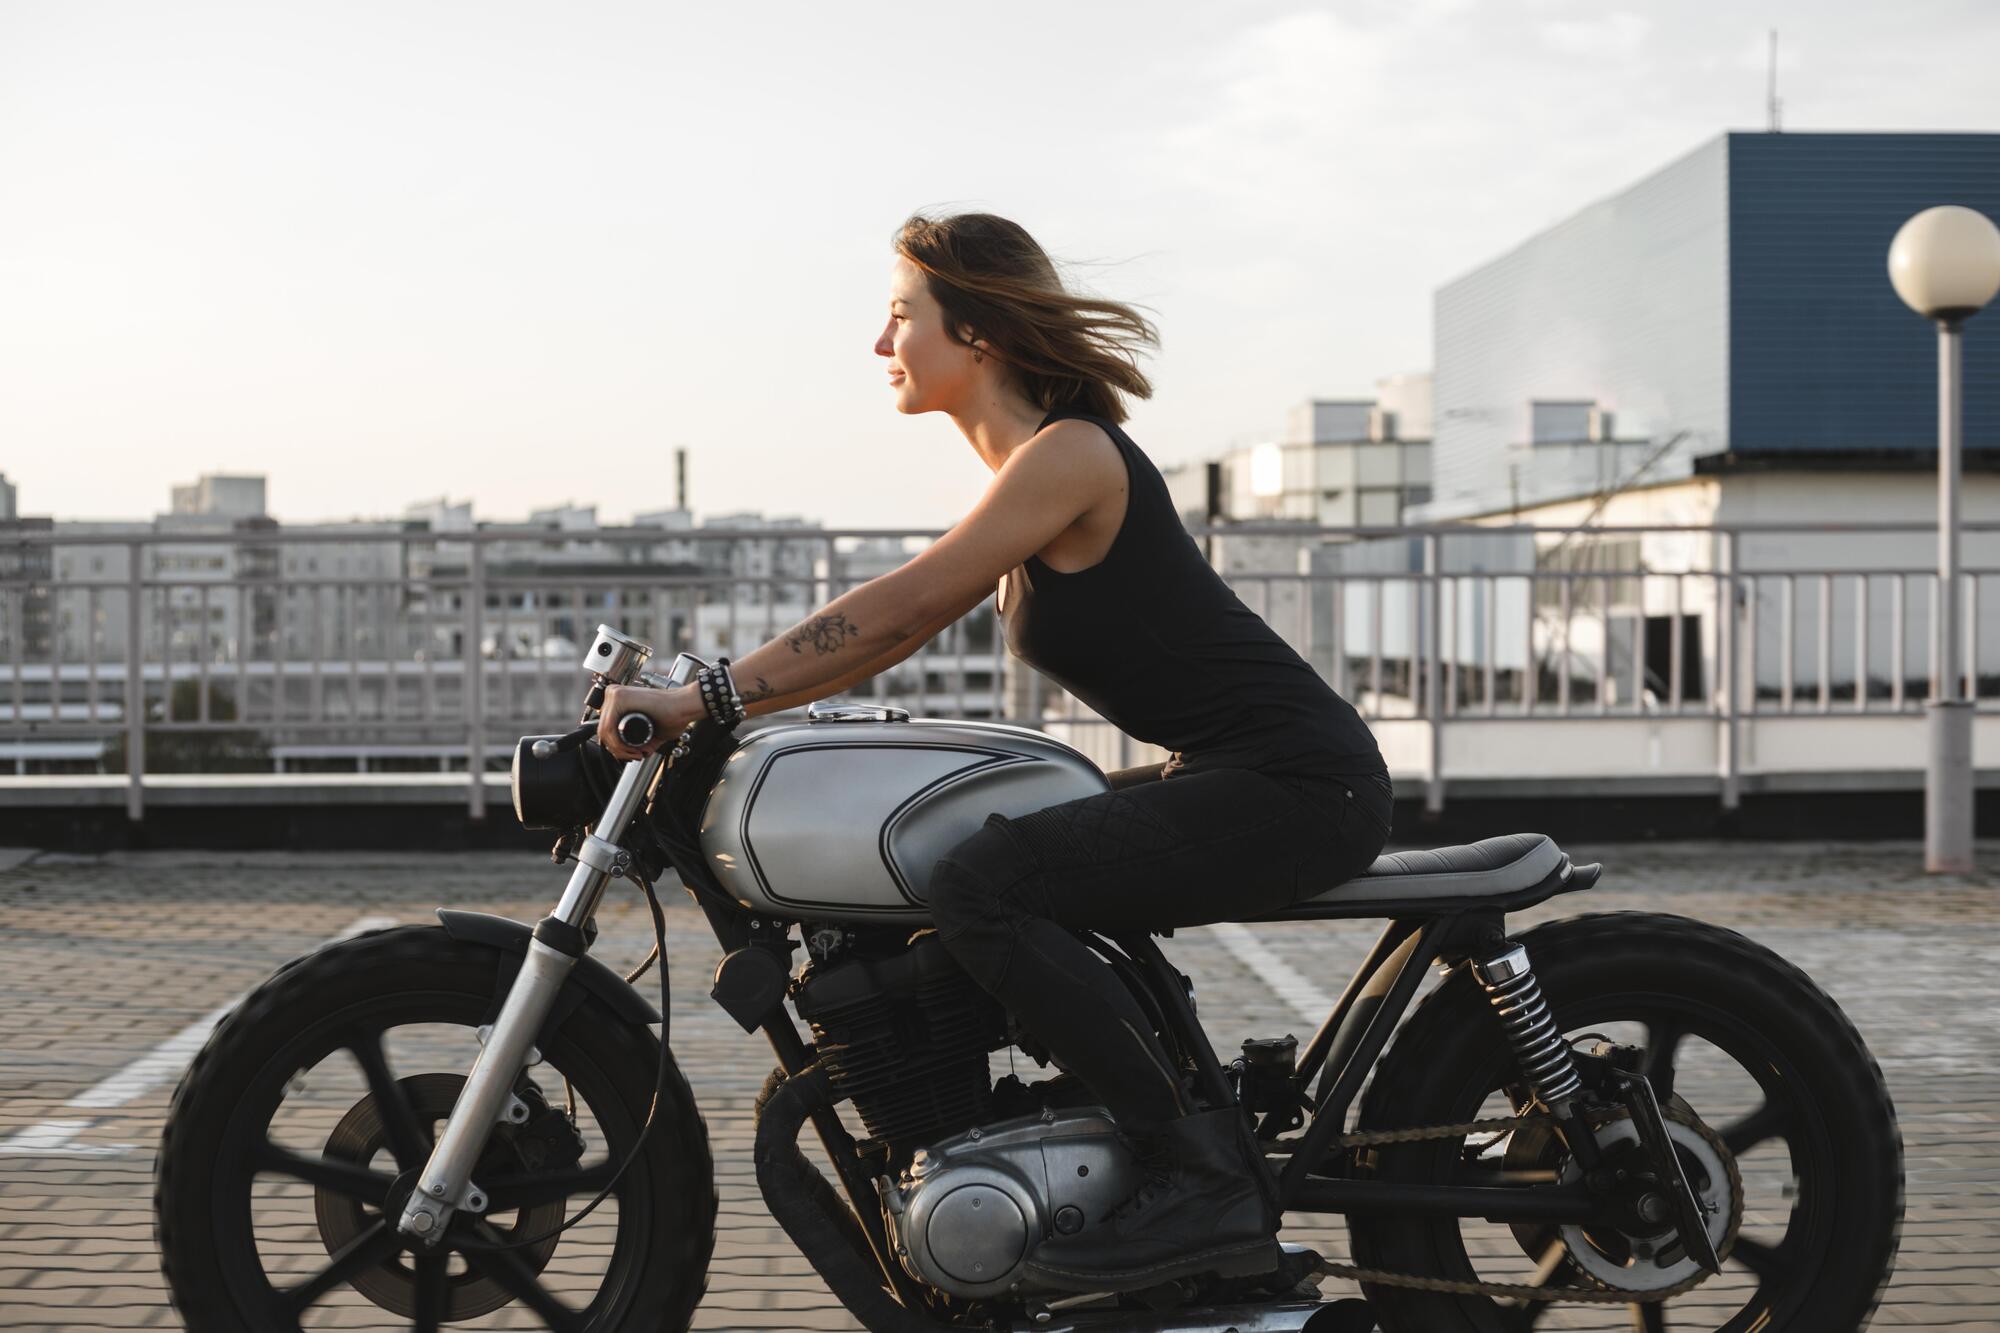 moto girl